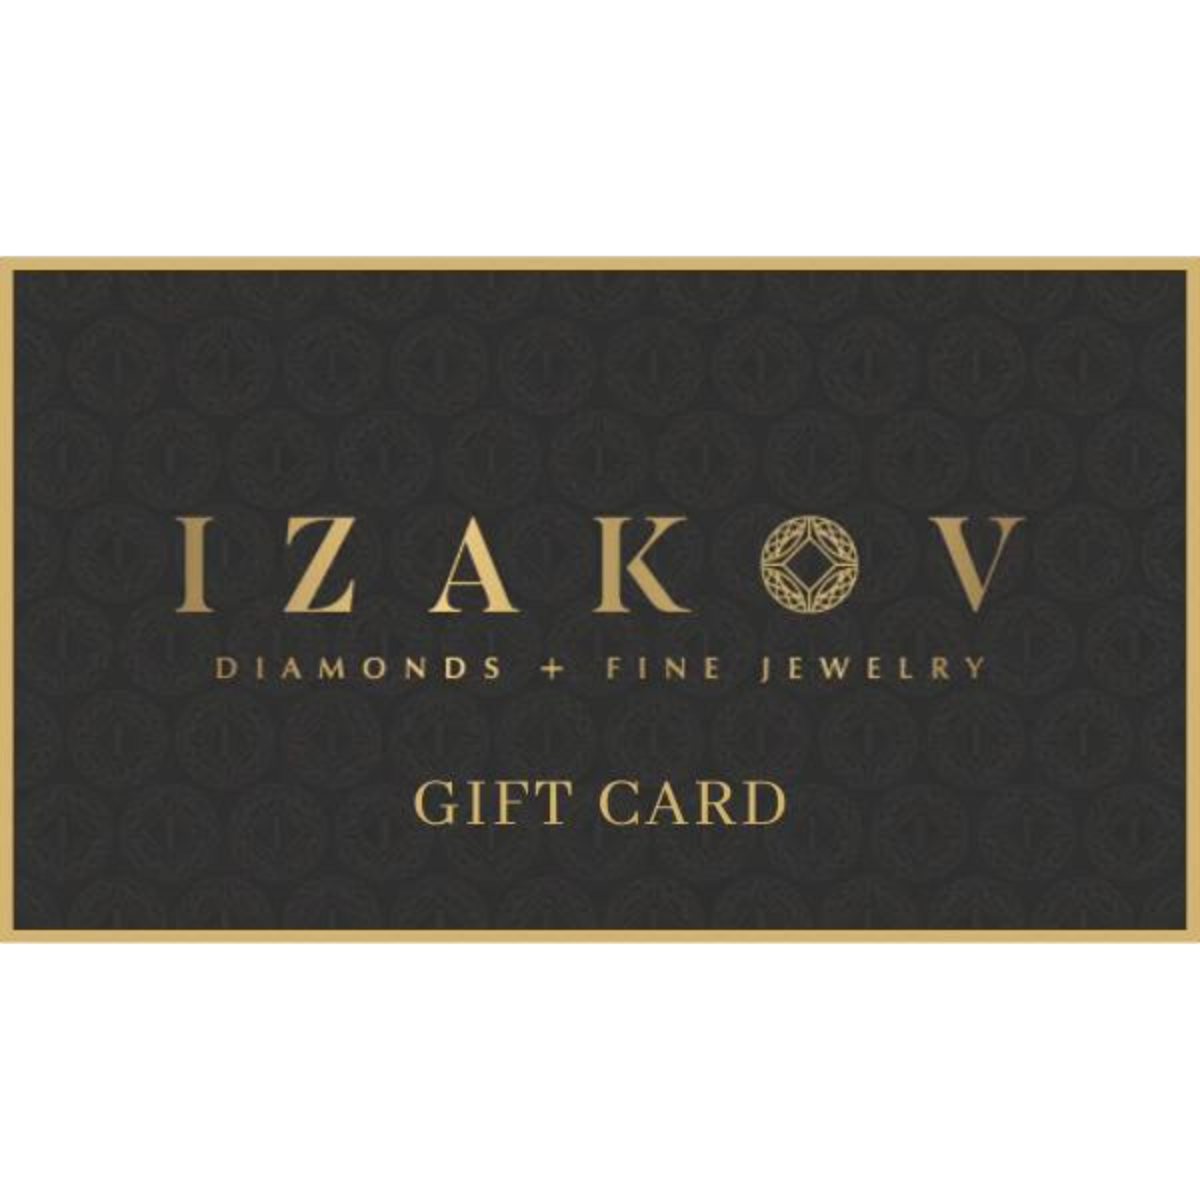 Izakov Gift Card by Izakov Diamonds + Fine Jewelry | Izakov